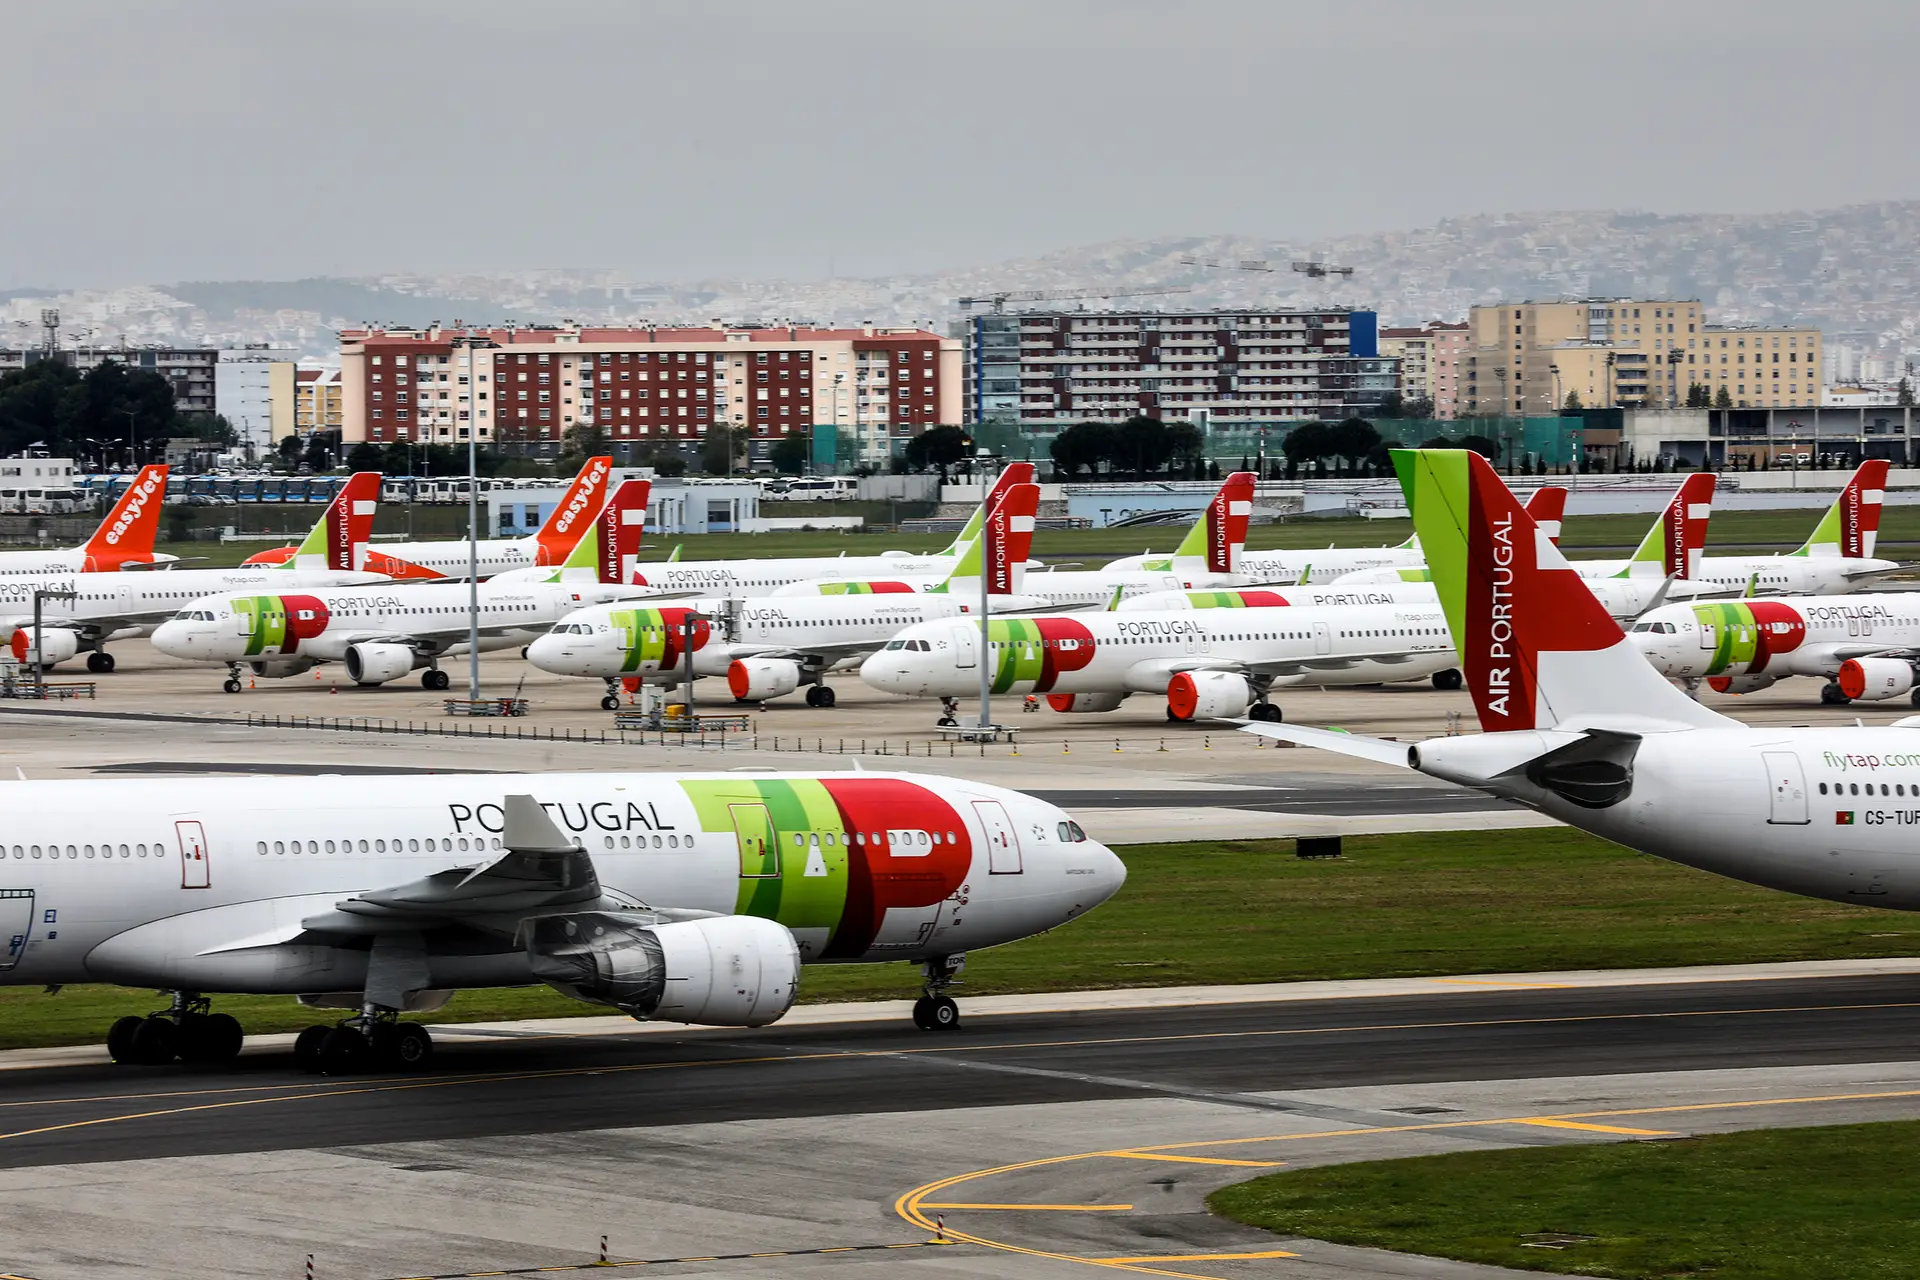 Aeroporto Humberto Delgado, em Lisboa